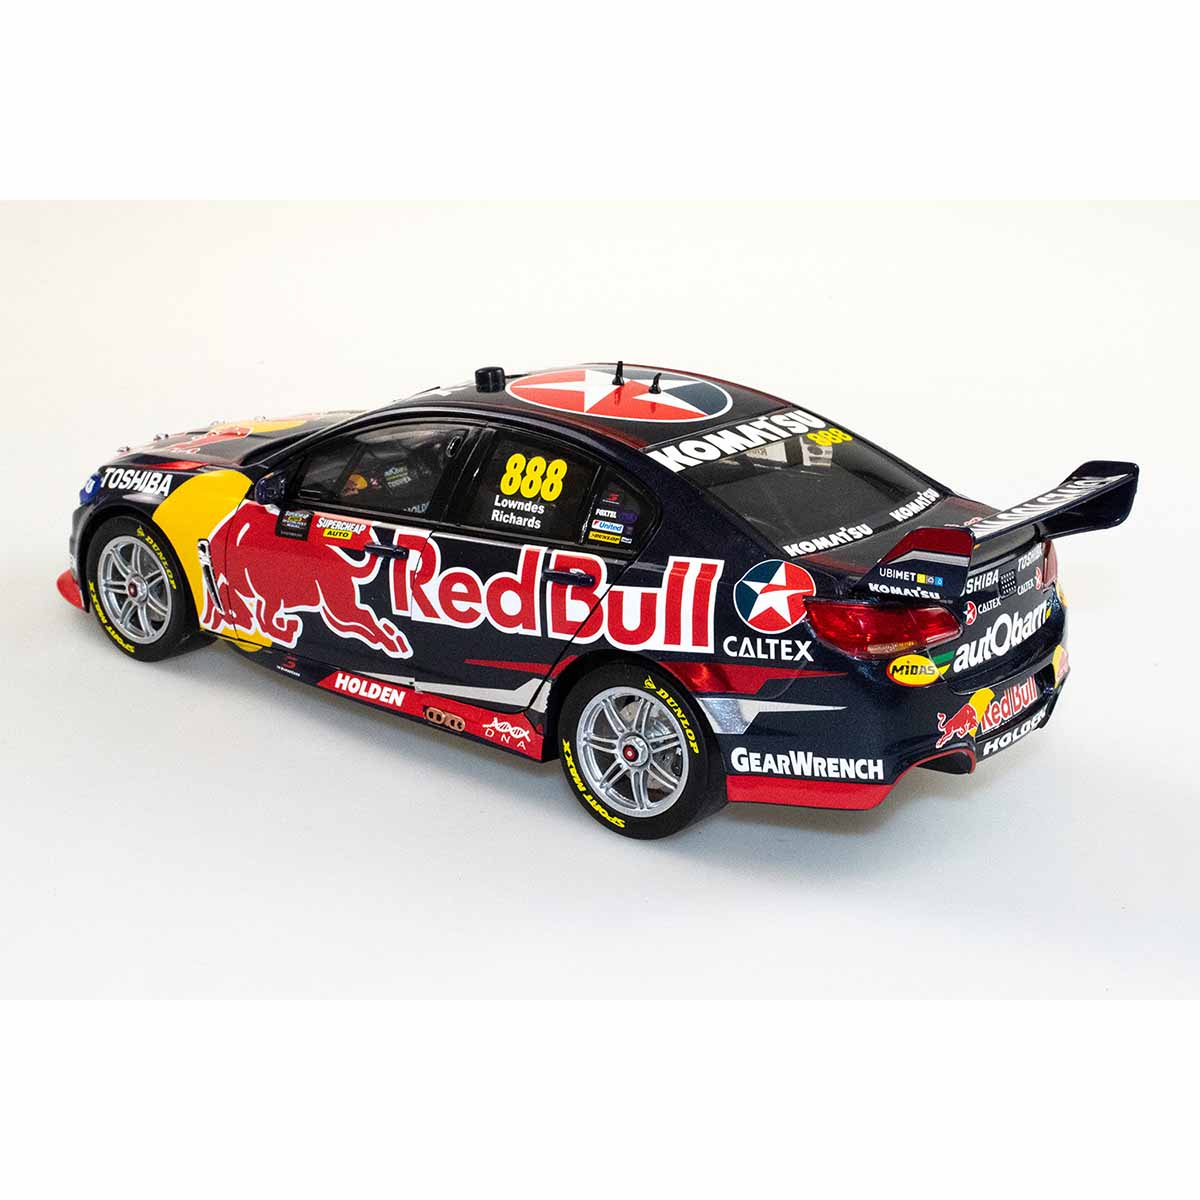 HOLDEN VF COMMODORE V8 - RED BULL RACING AUSTRALIA - LOWNDES/RICHARDS #888 - 2015 BATHURST 1000 WINNER - 1:18 Scale Diecast Model Car